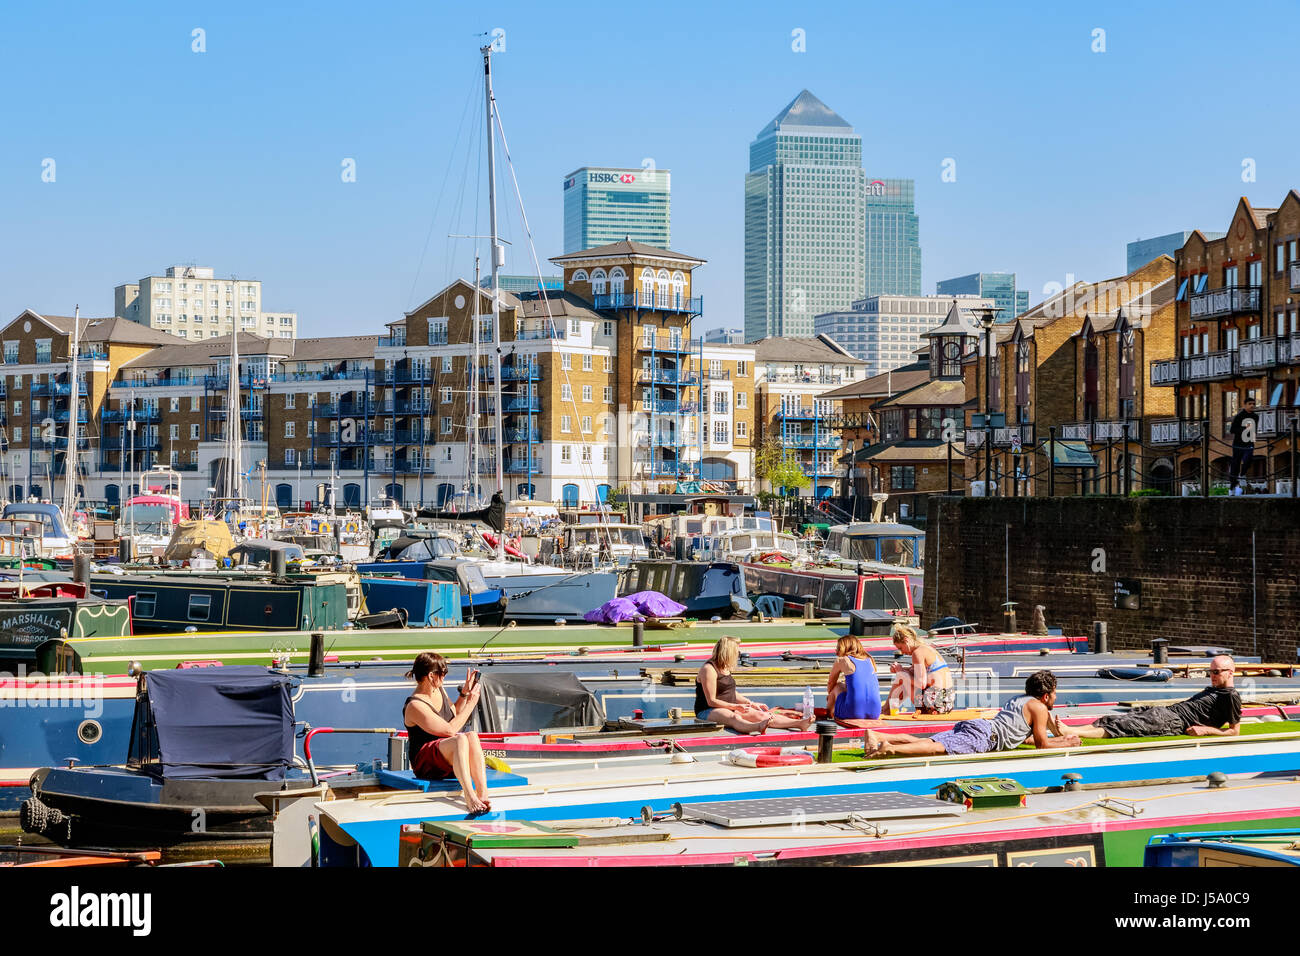 London, UK - 8. April 2017 - Leute zum Sonnenbaden auf den Booten vertäut am Limehouse Bassin mit Canary Wharf im Hintergrund Stockfoto